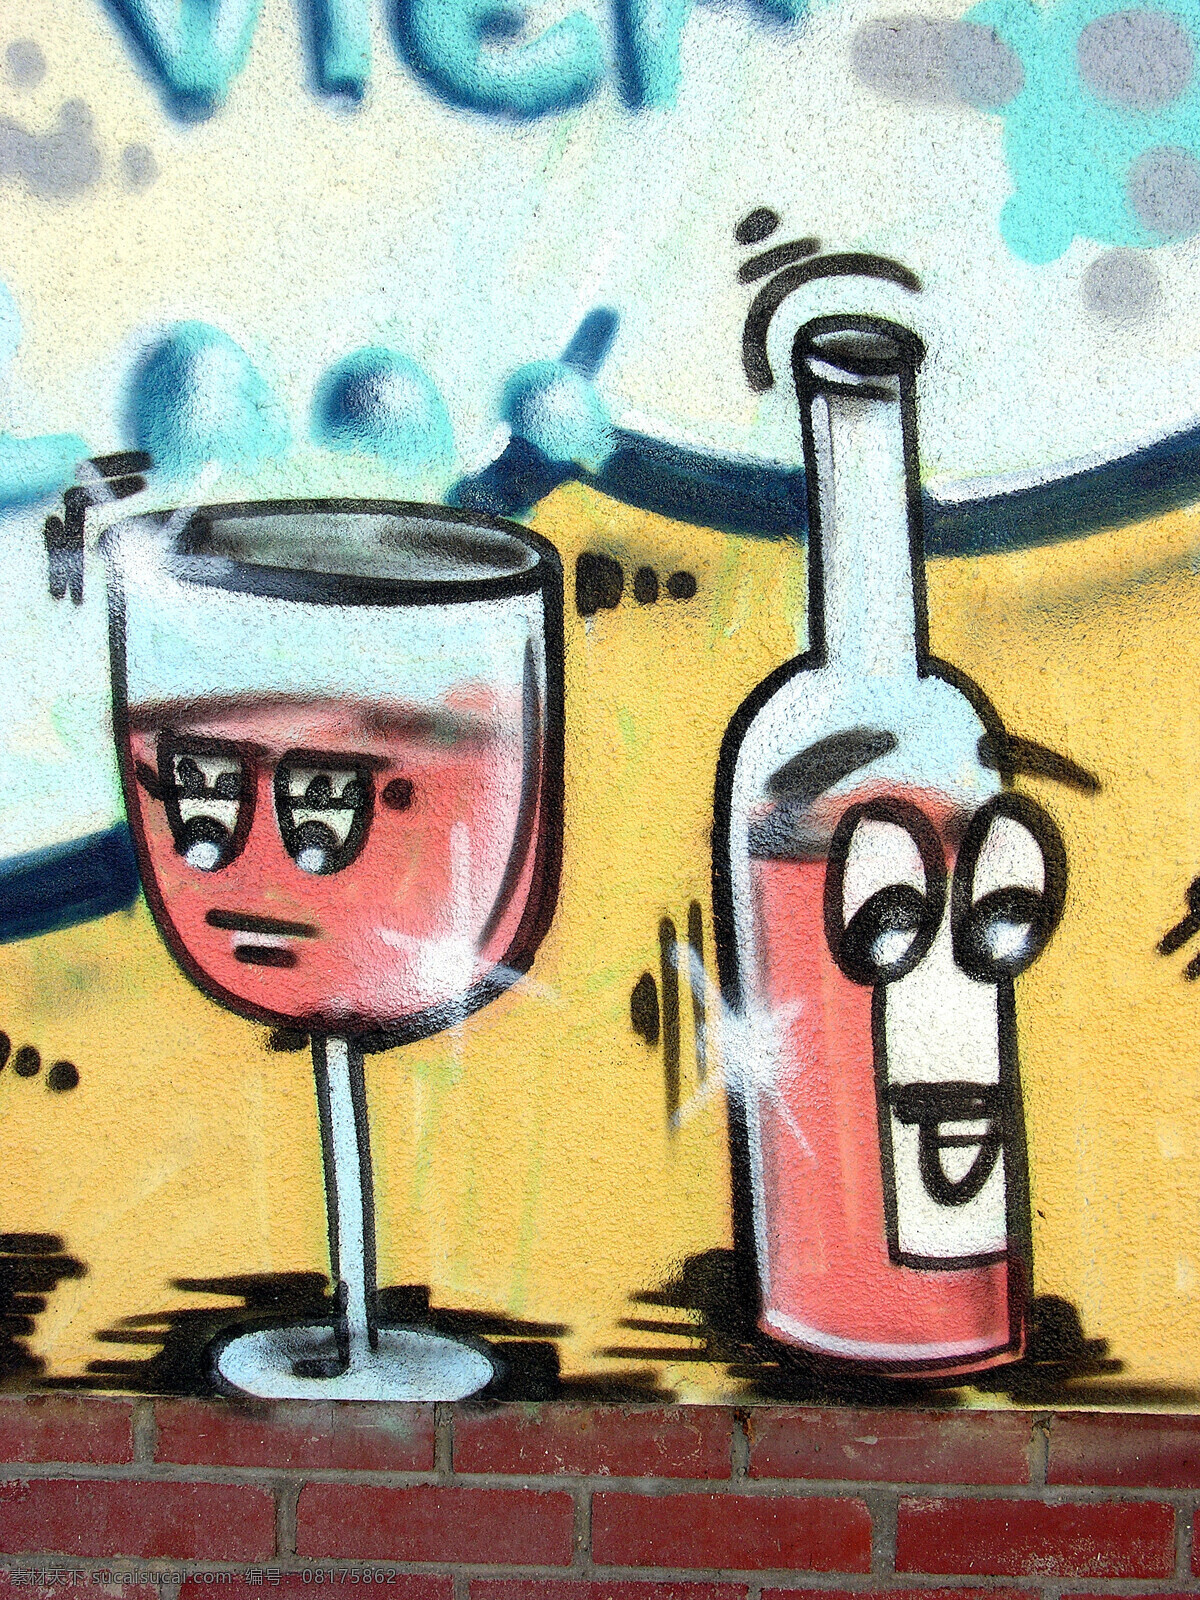 红酒 酒瓶 酒杯 涂鸦 高脚杯 涂鸦漫画 涂鸦艺术 街头文化 墙壁涂鸦 其他艺术 文化艺术